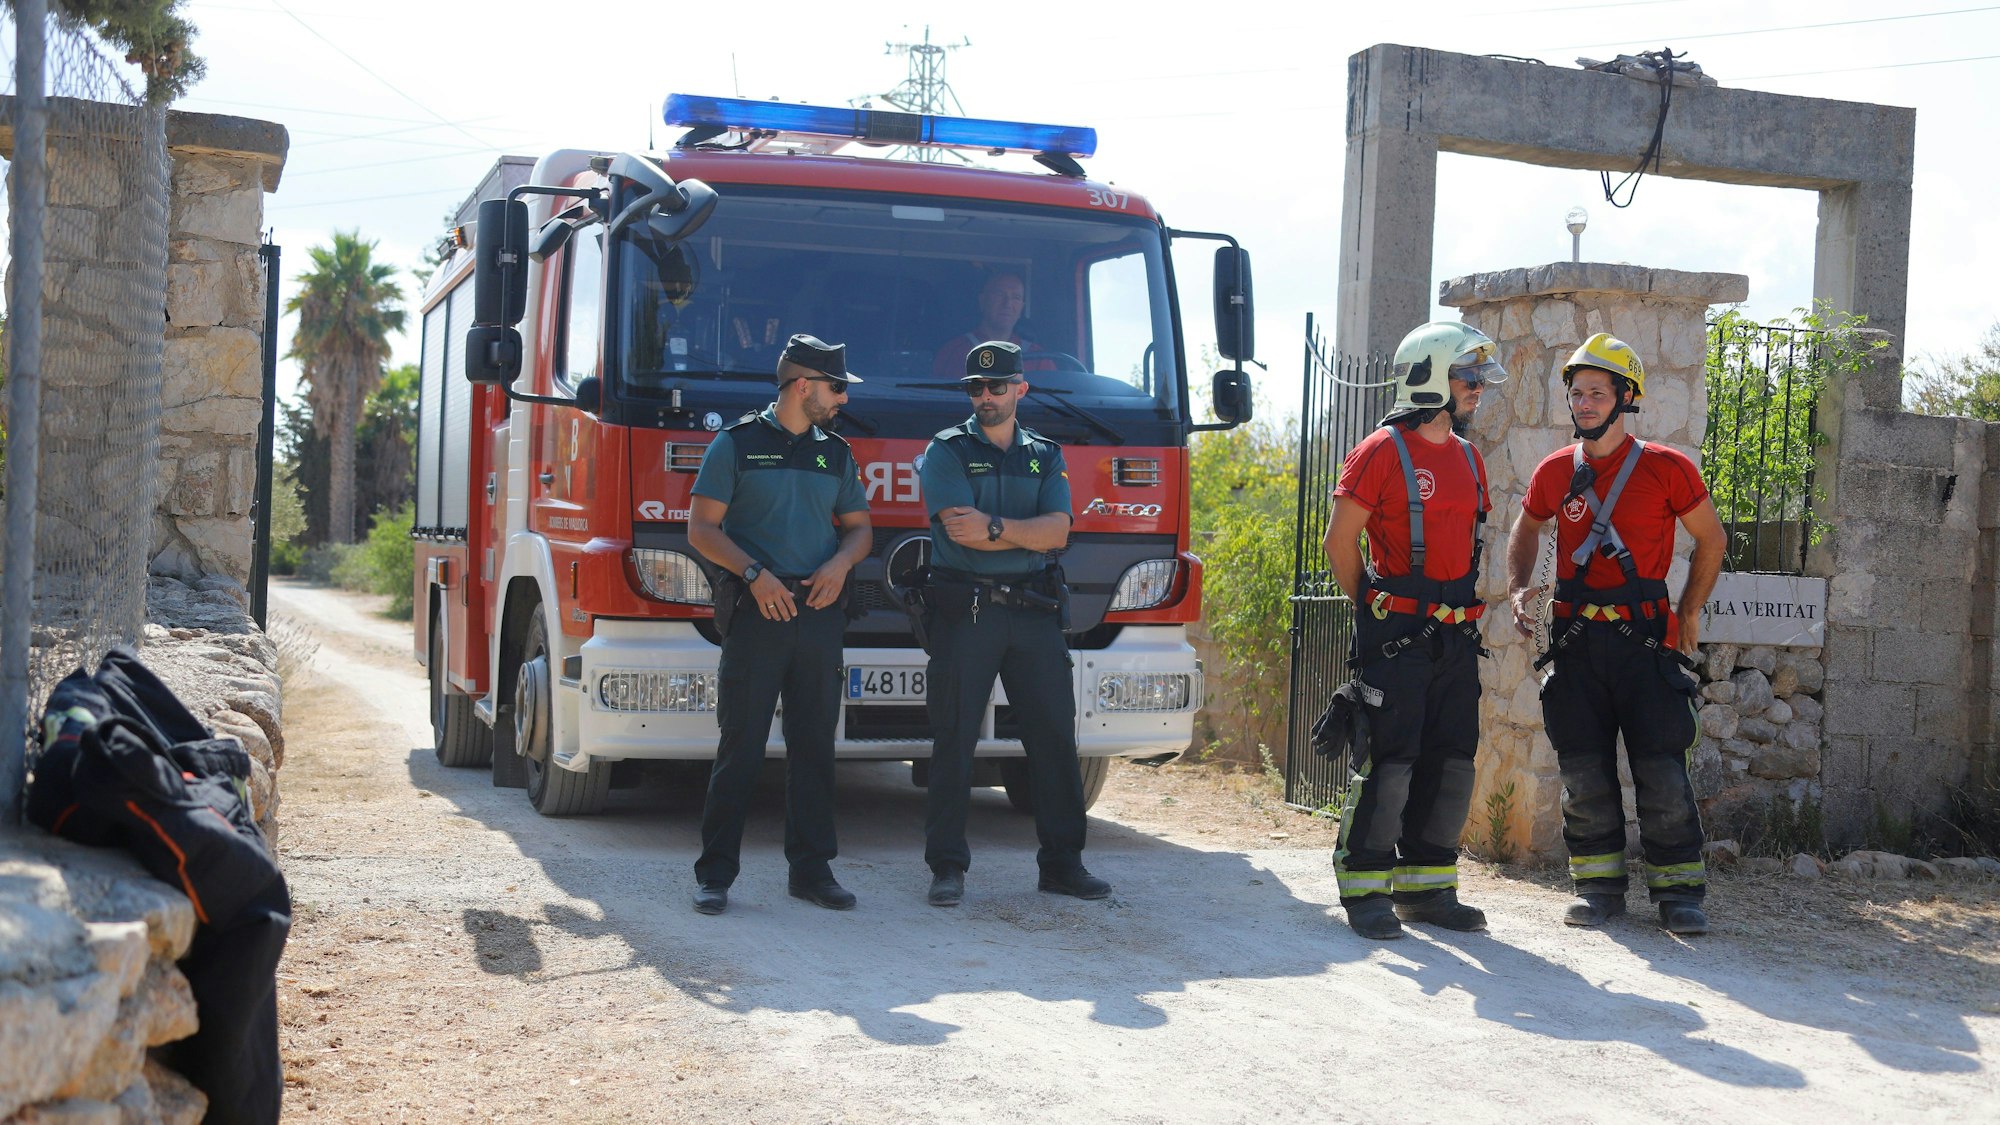 Mitglieder der Polizeieinheit „Guardia Civil“ (l) und der Feuerwehr stehen nach einer Kollision zwischen einem Flugzeug und einem Hubschrauber in der Nähe der Absturzstelle.